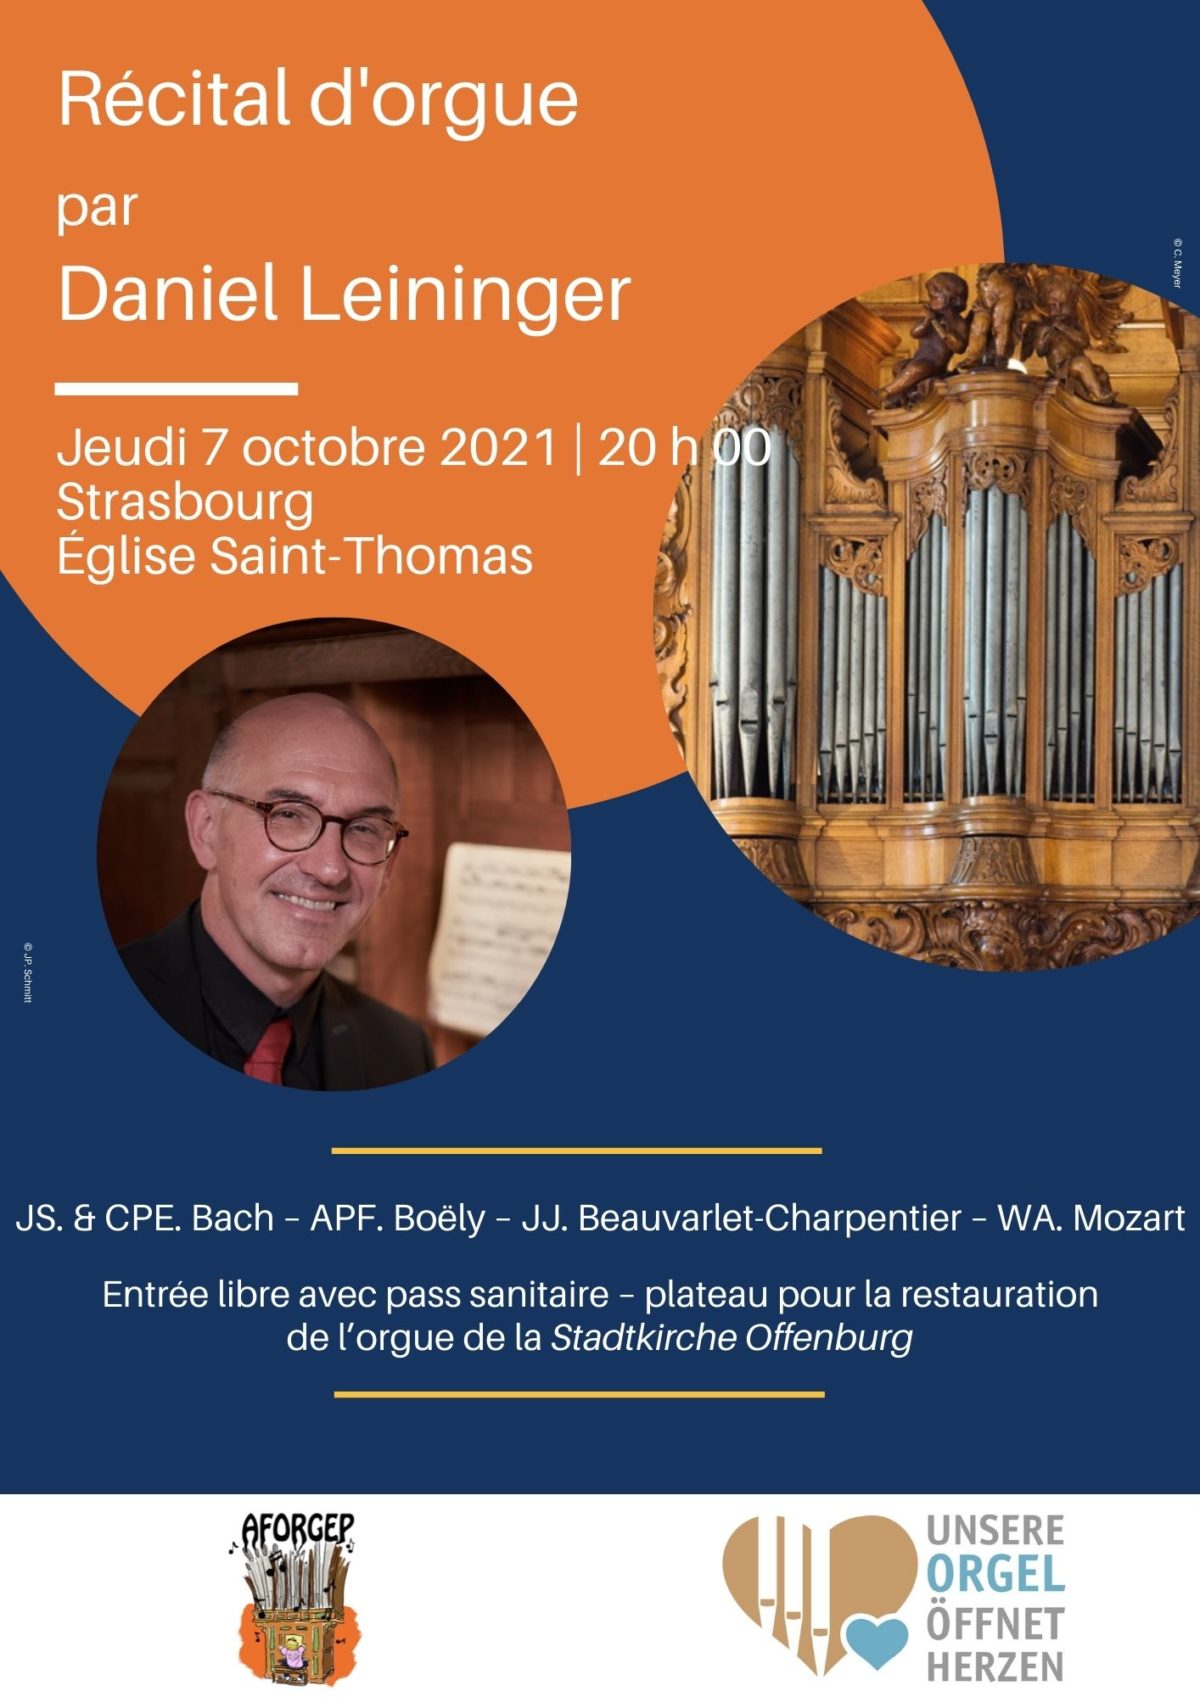 Récital d'orgue Strasbourg église Saint Thomas